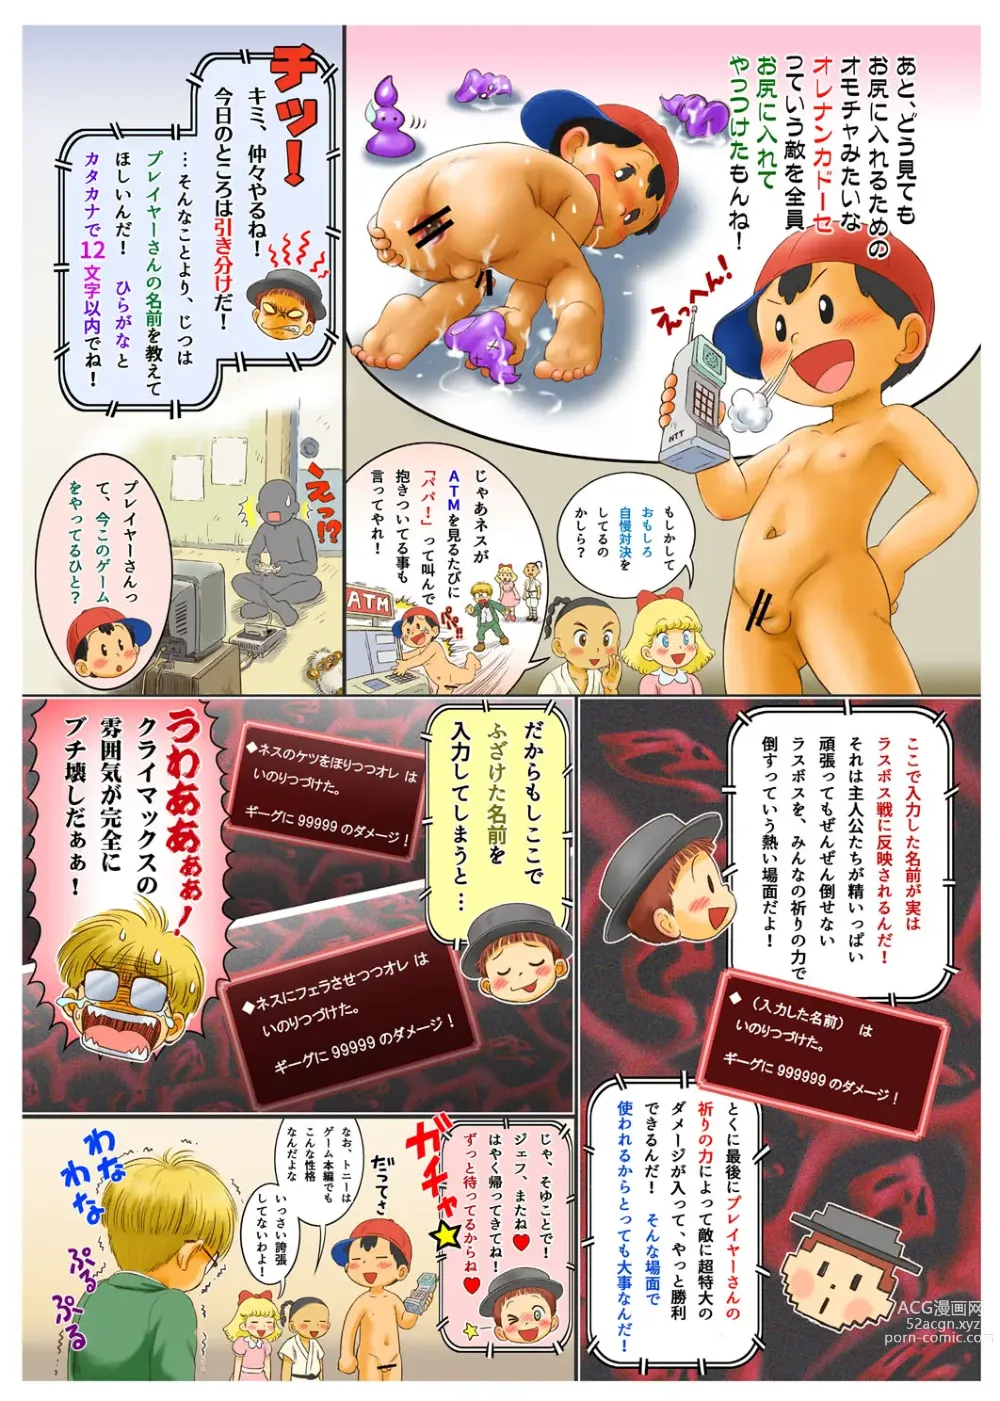 Page 6 of doujinshi KINDER KINDER